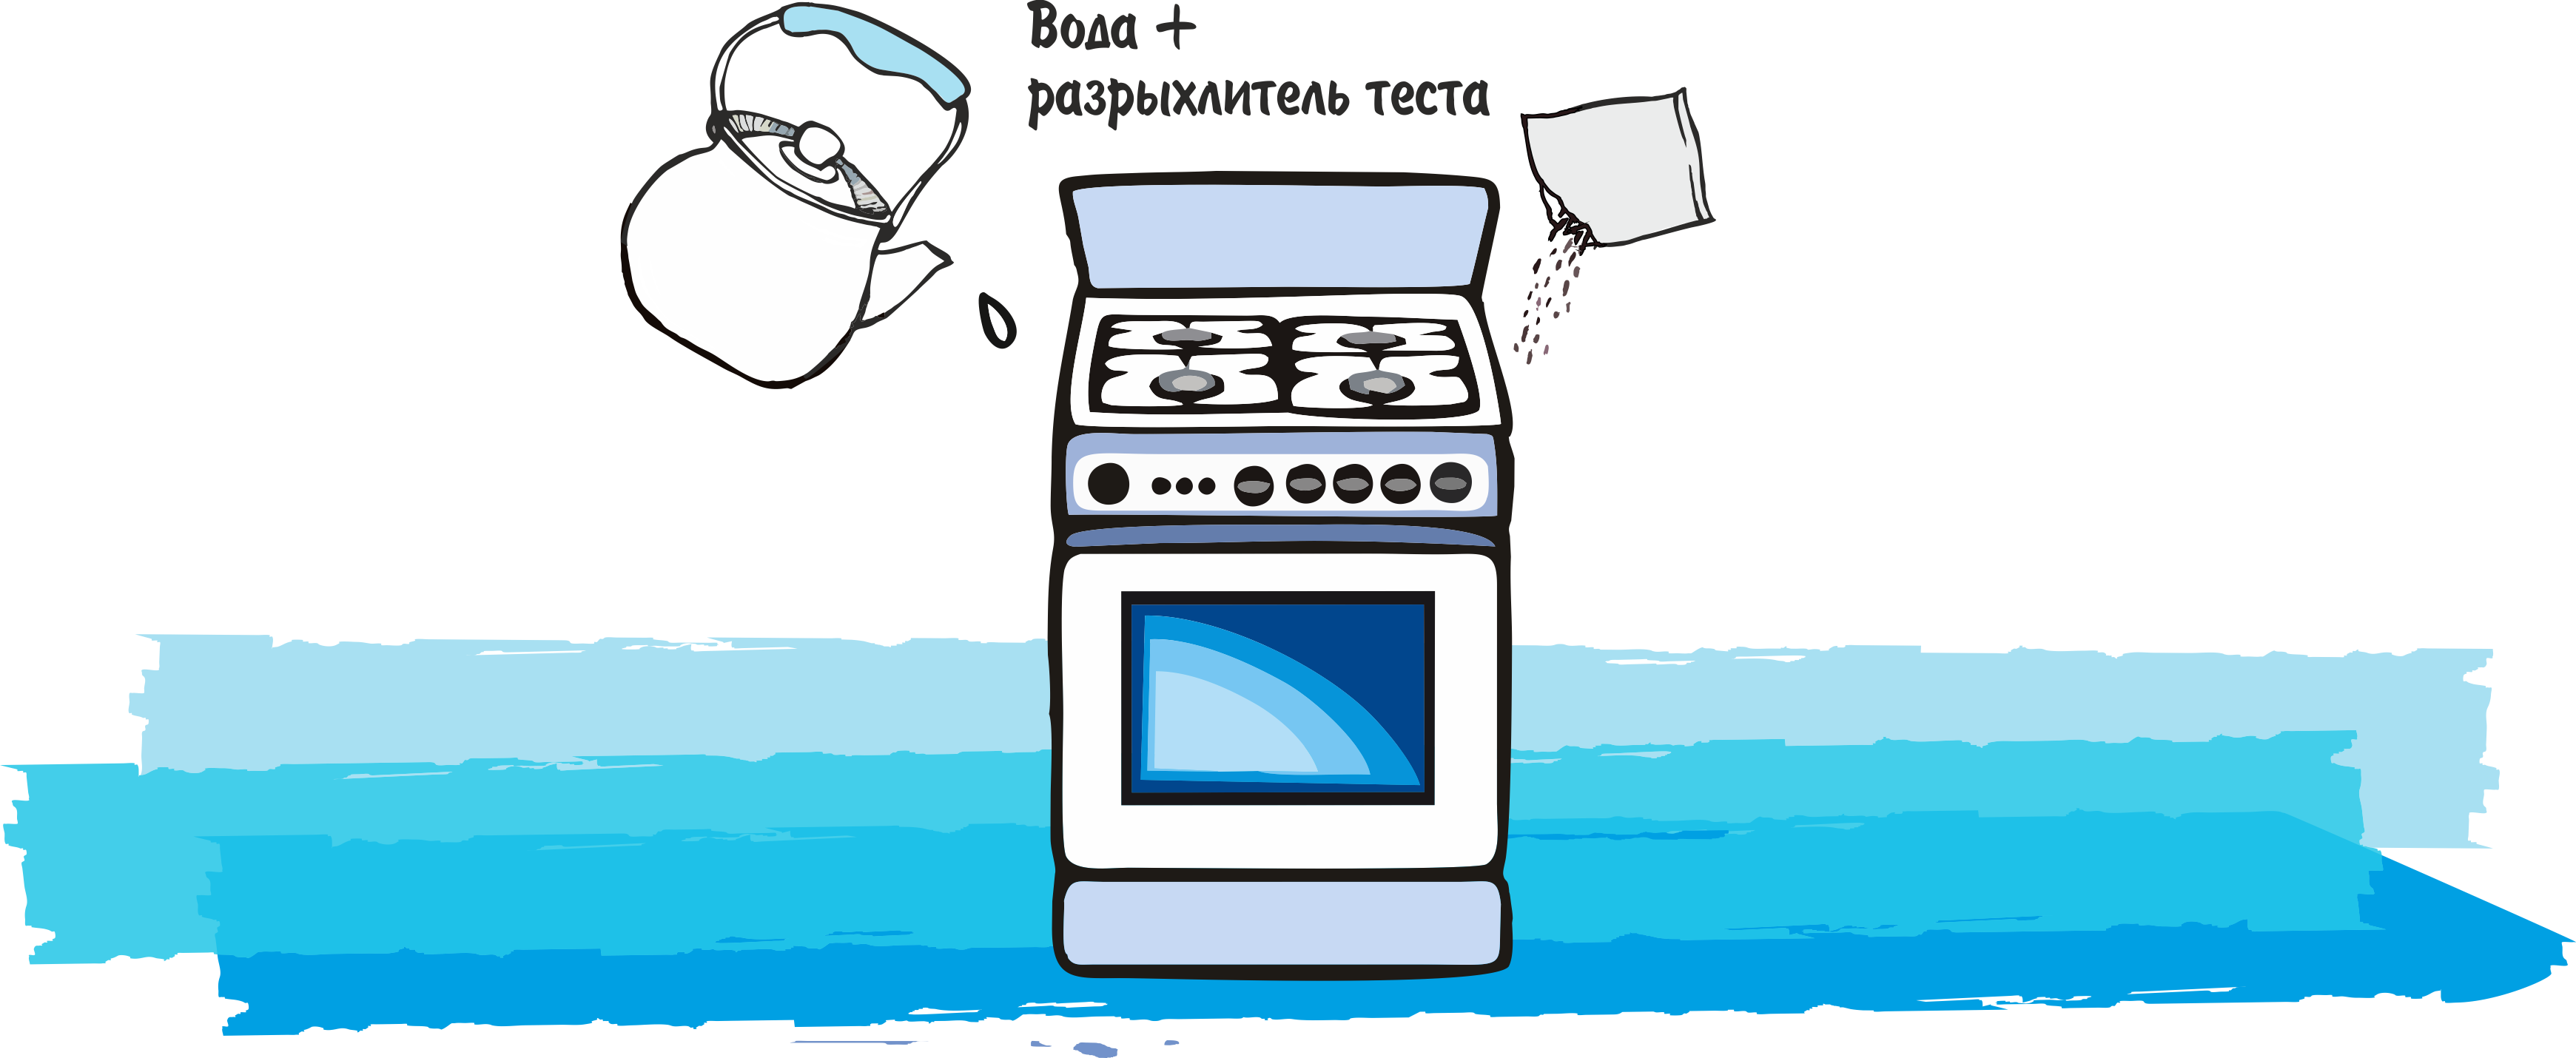 Как почистить духовку? Сравнительный тест народных средств и HG. Фото До-После - 3